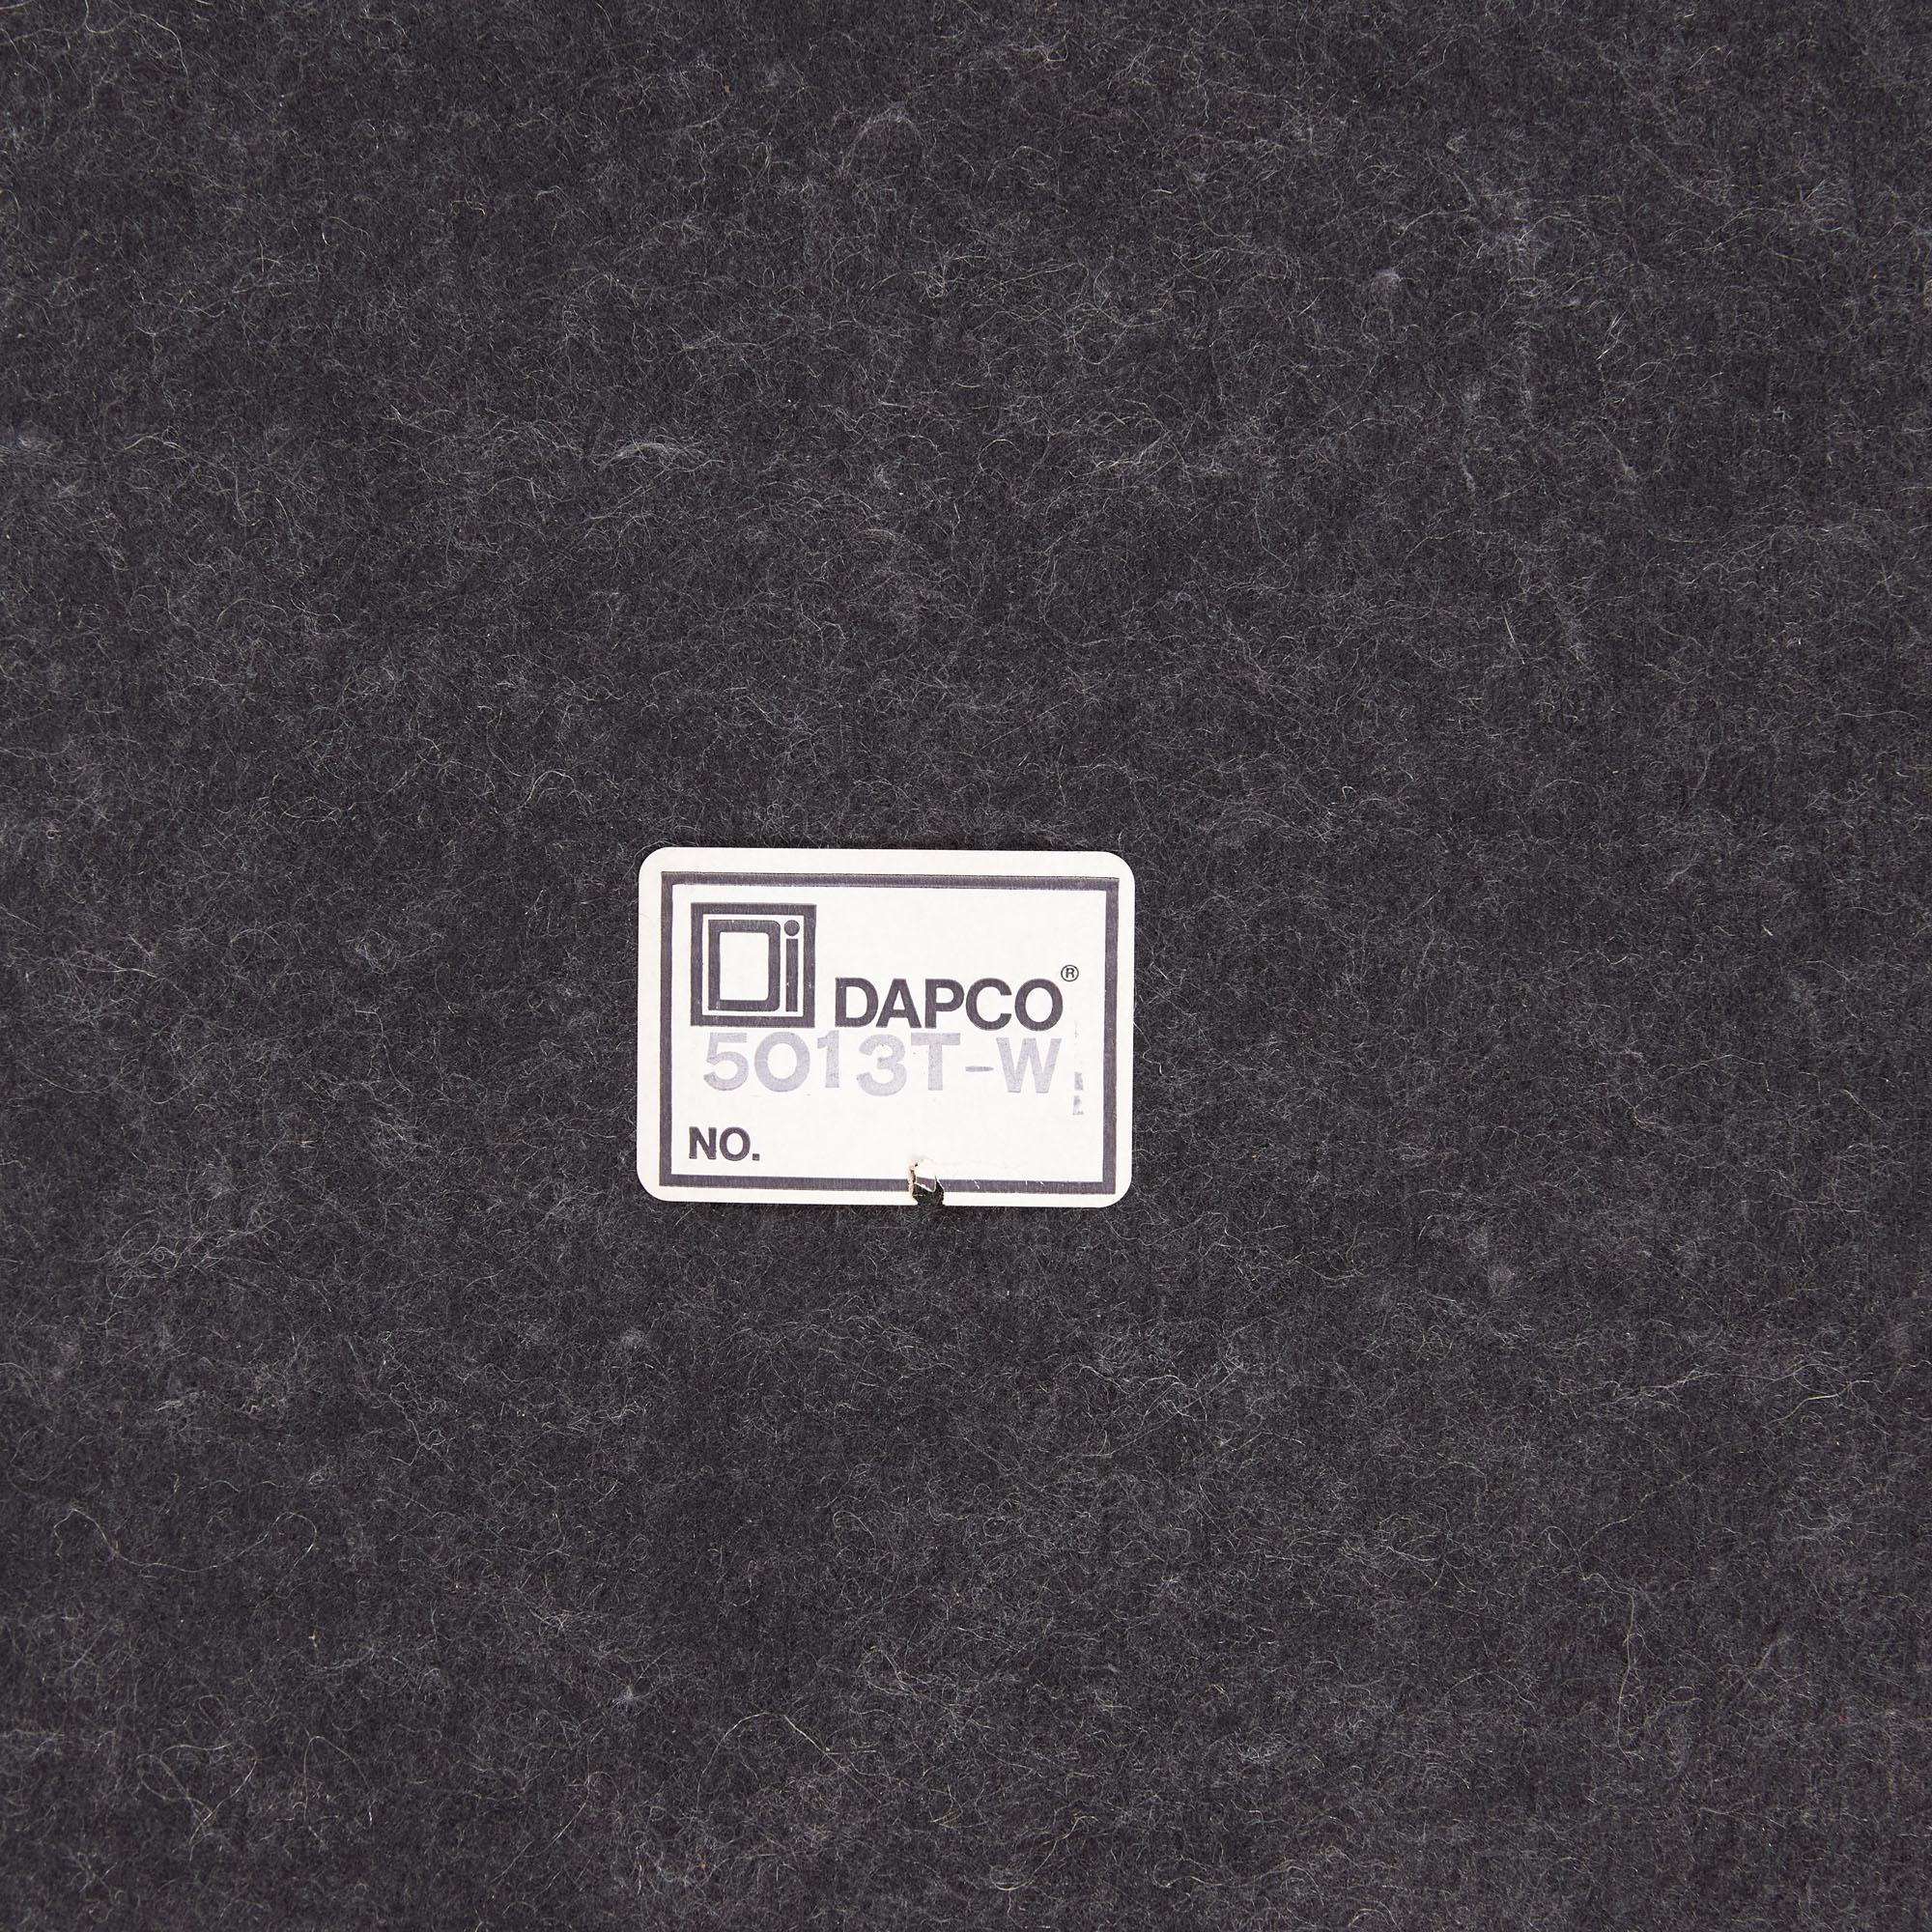 Italian Walnut Paper Tray by DAPCO 3